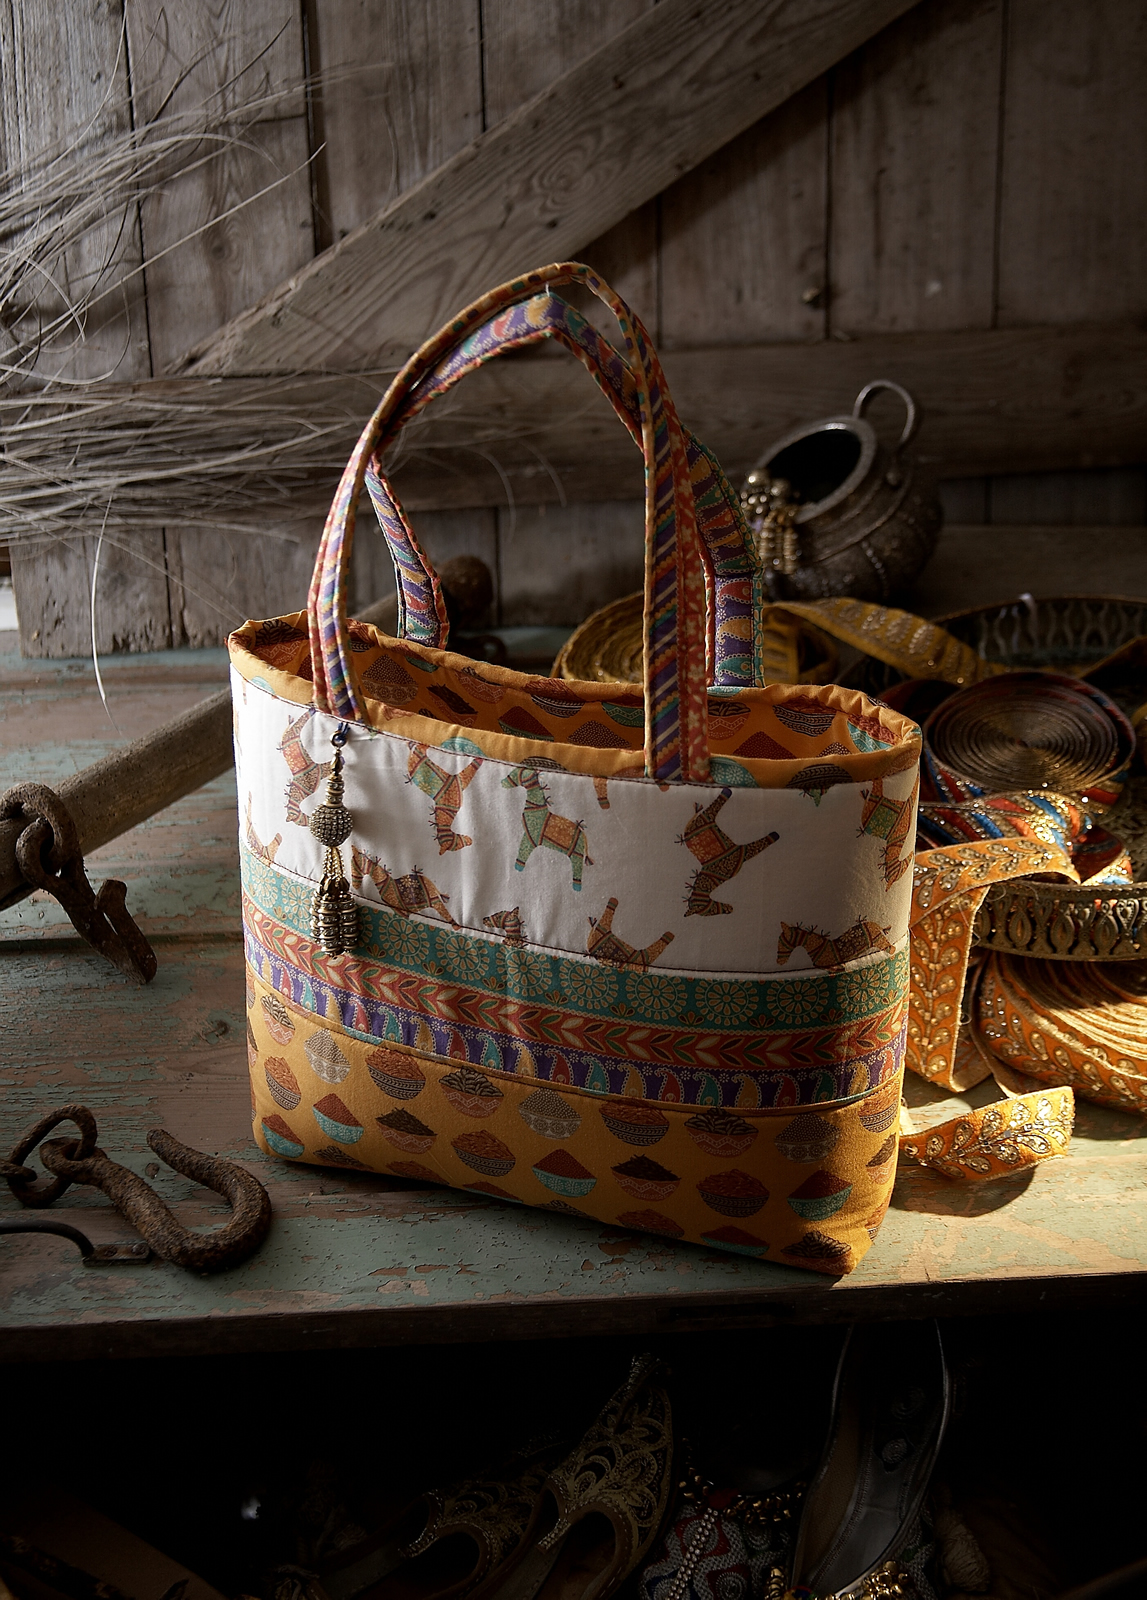 'New Delhi' fabric by Debbie Shore - Indian Horses